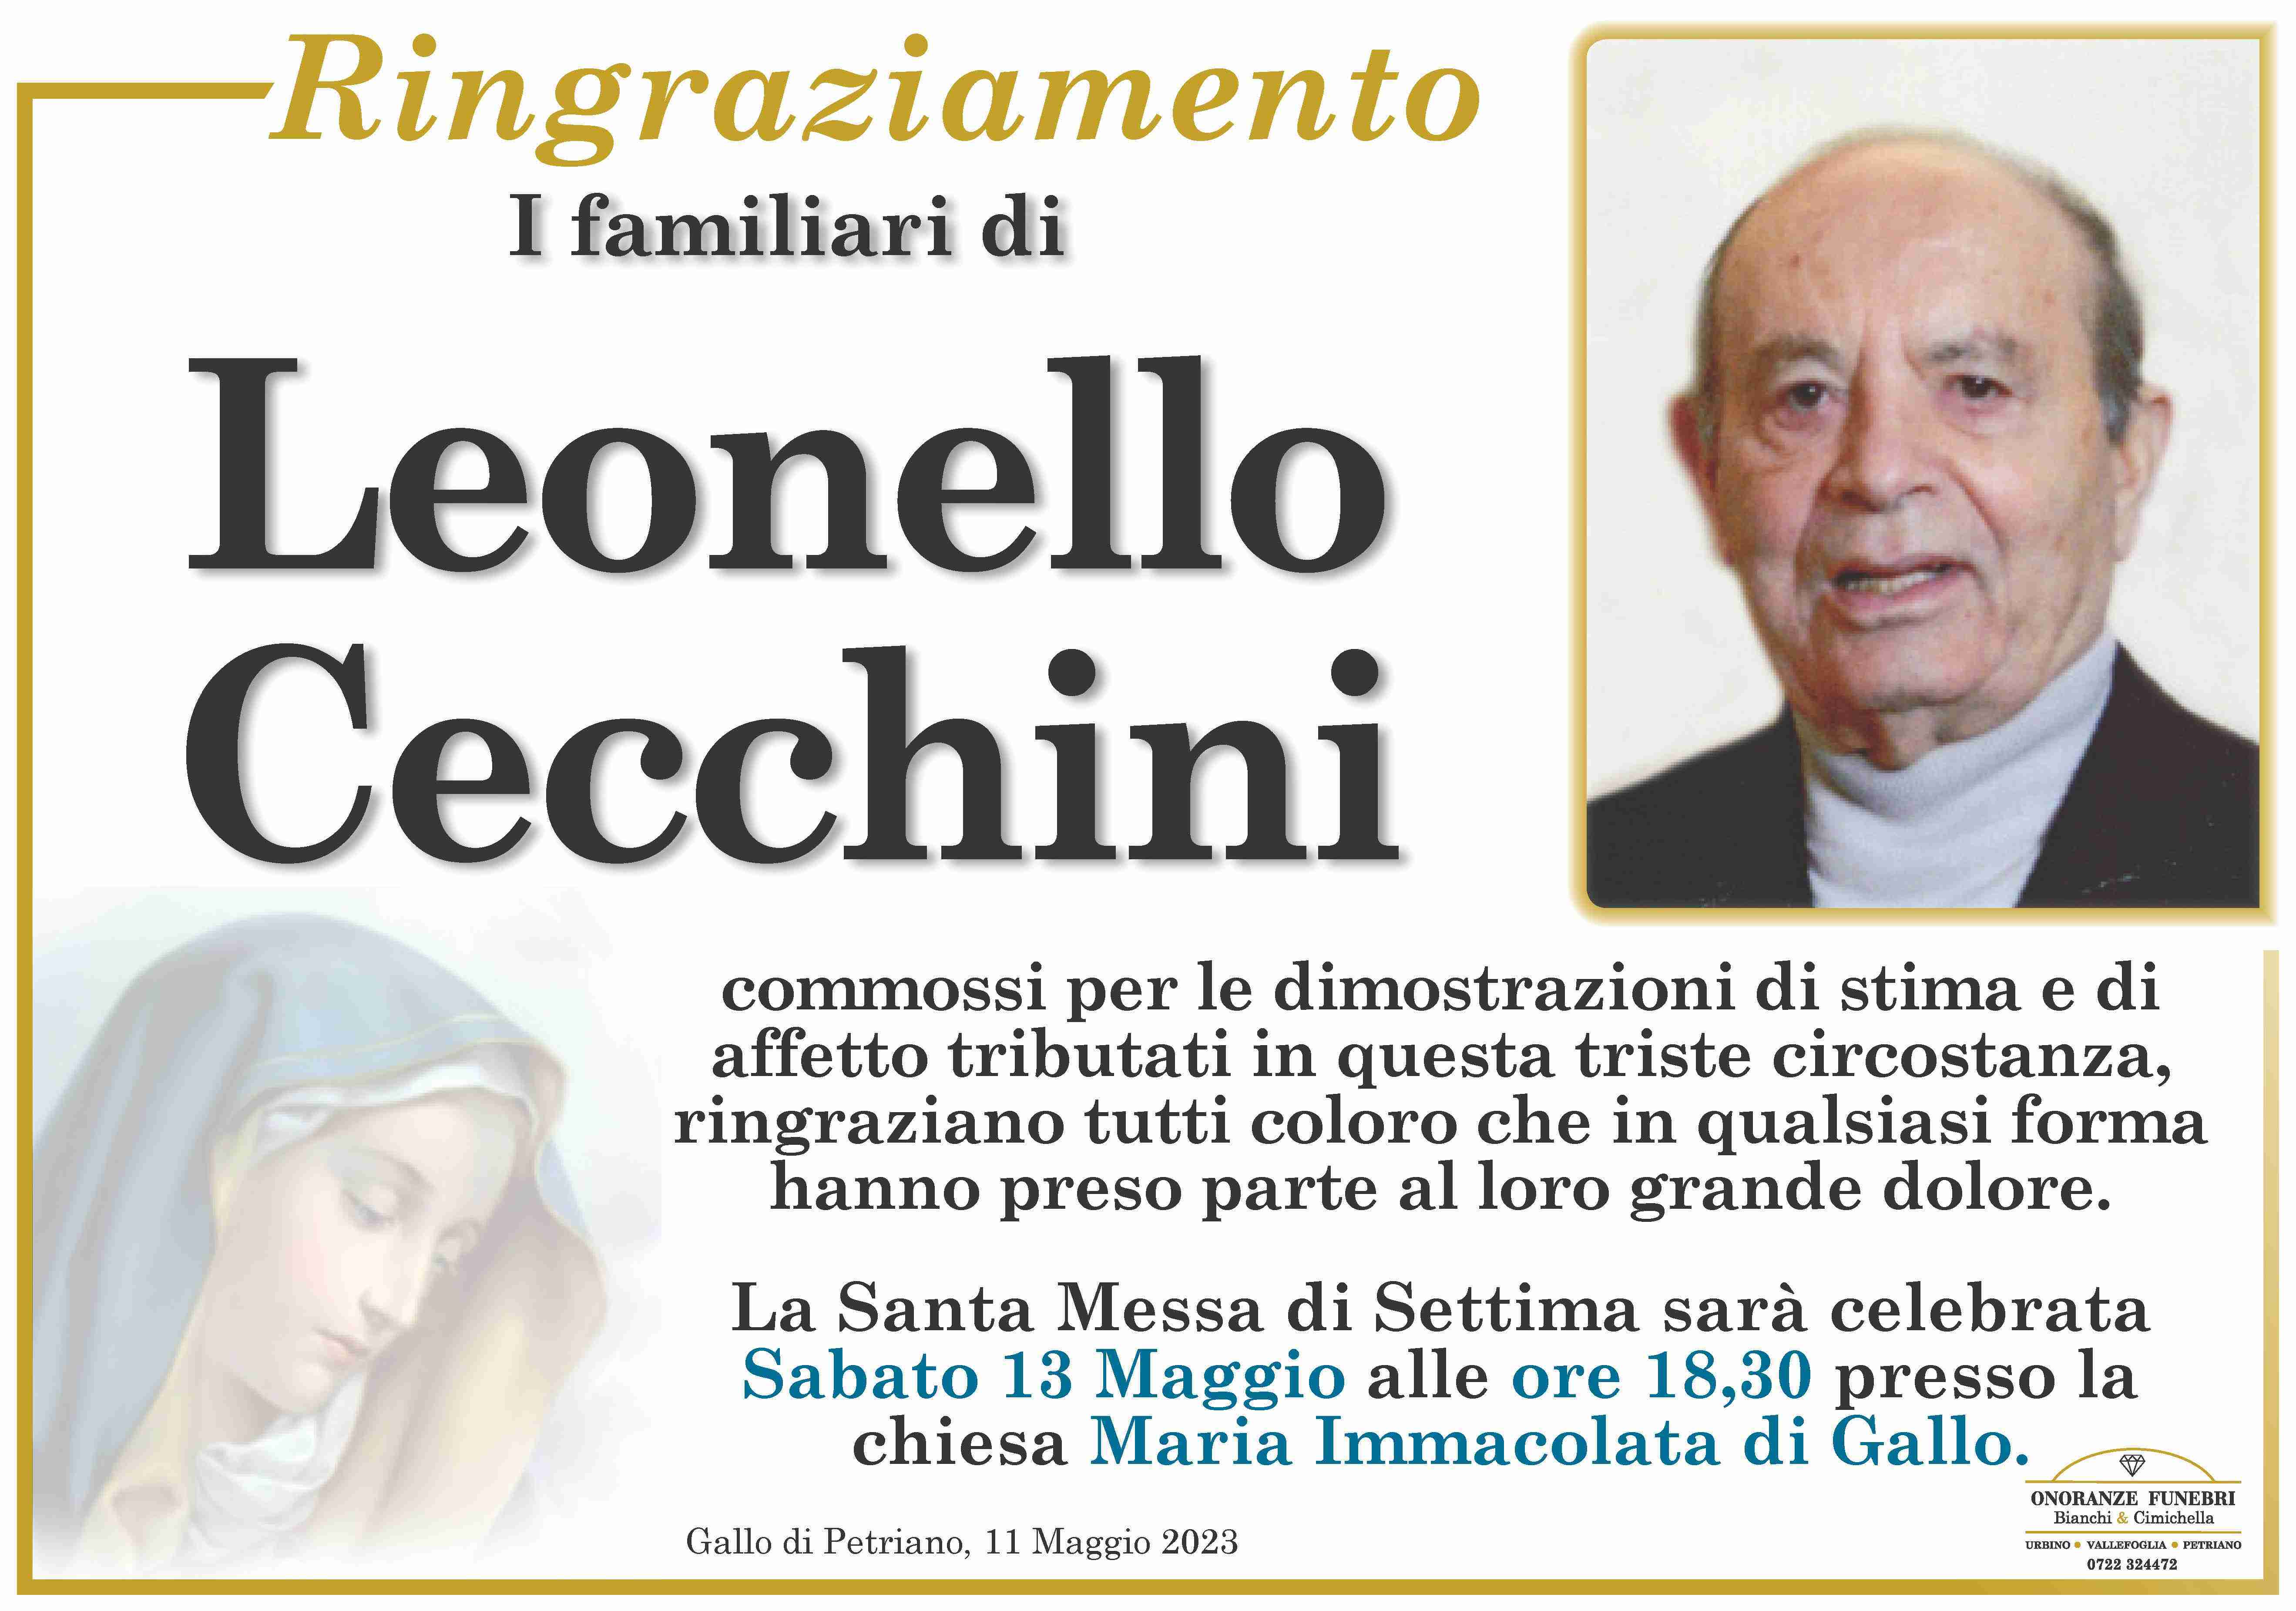 Leonello Cecchini